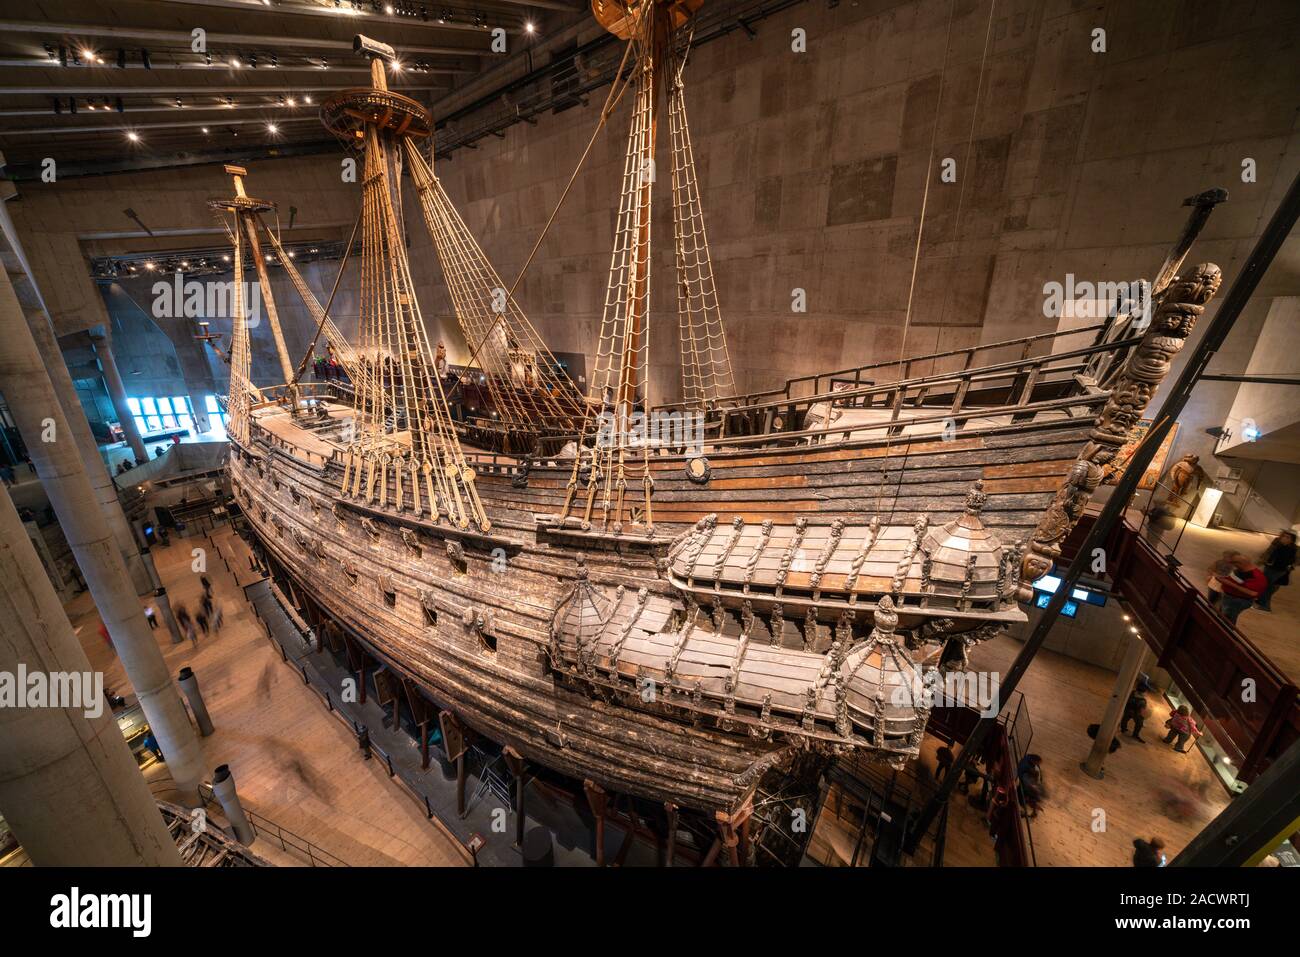 Le navire de guerre suédois Vasa dans le musée Vasa (Vasamuseet) à Stockholm, Suède Banque D'Images